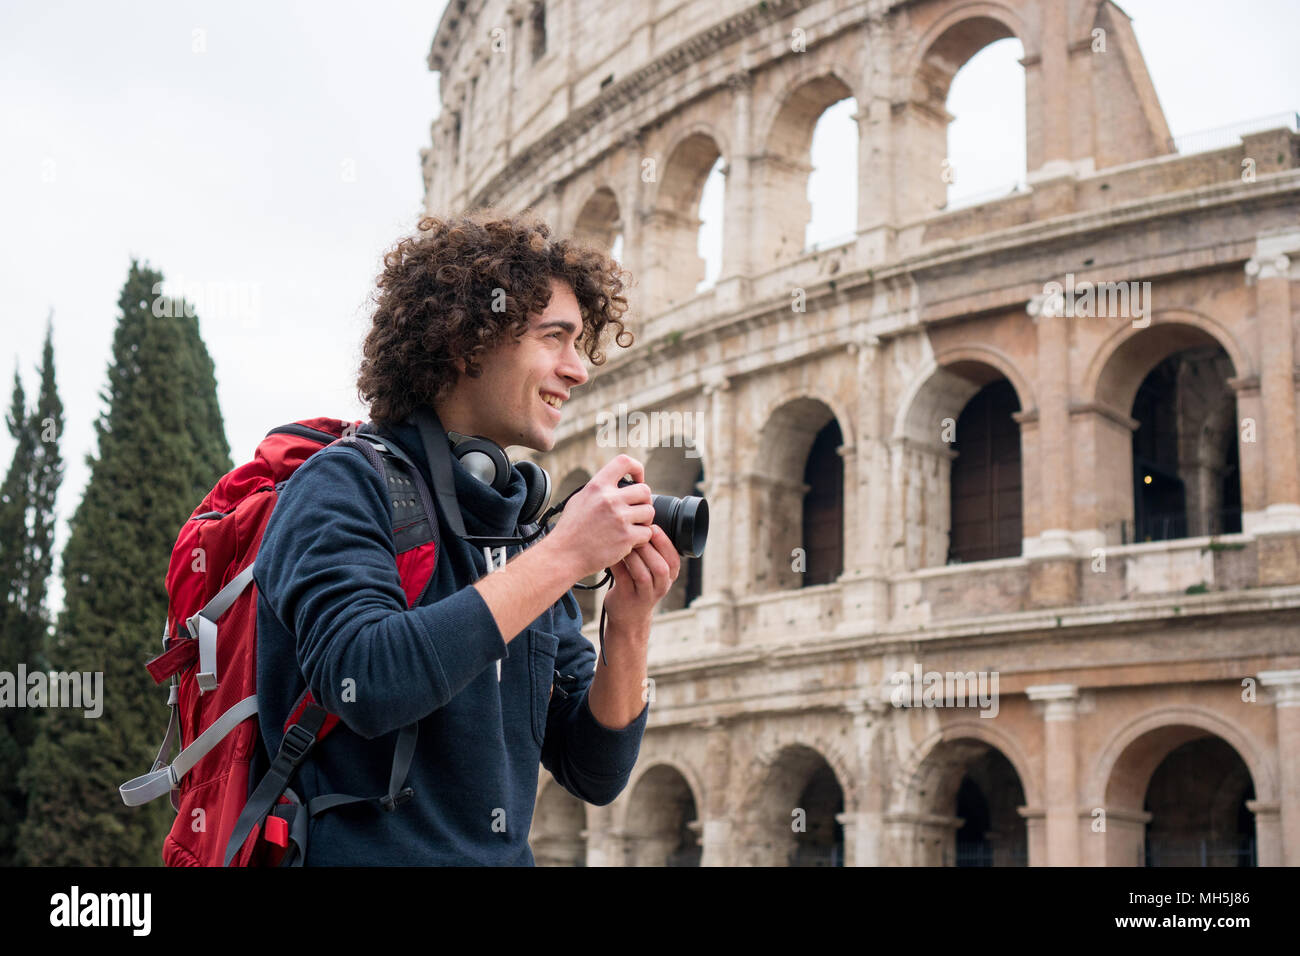 Hübscher junger Tourist Mann mit Kamera und Rucksack, die Bilder von Kolosseum in Rom, Italien. Jungen Touristen, die Bilder von Kolosseum Stockfoto